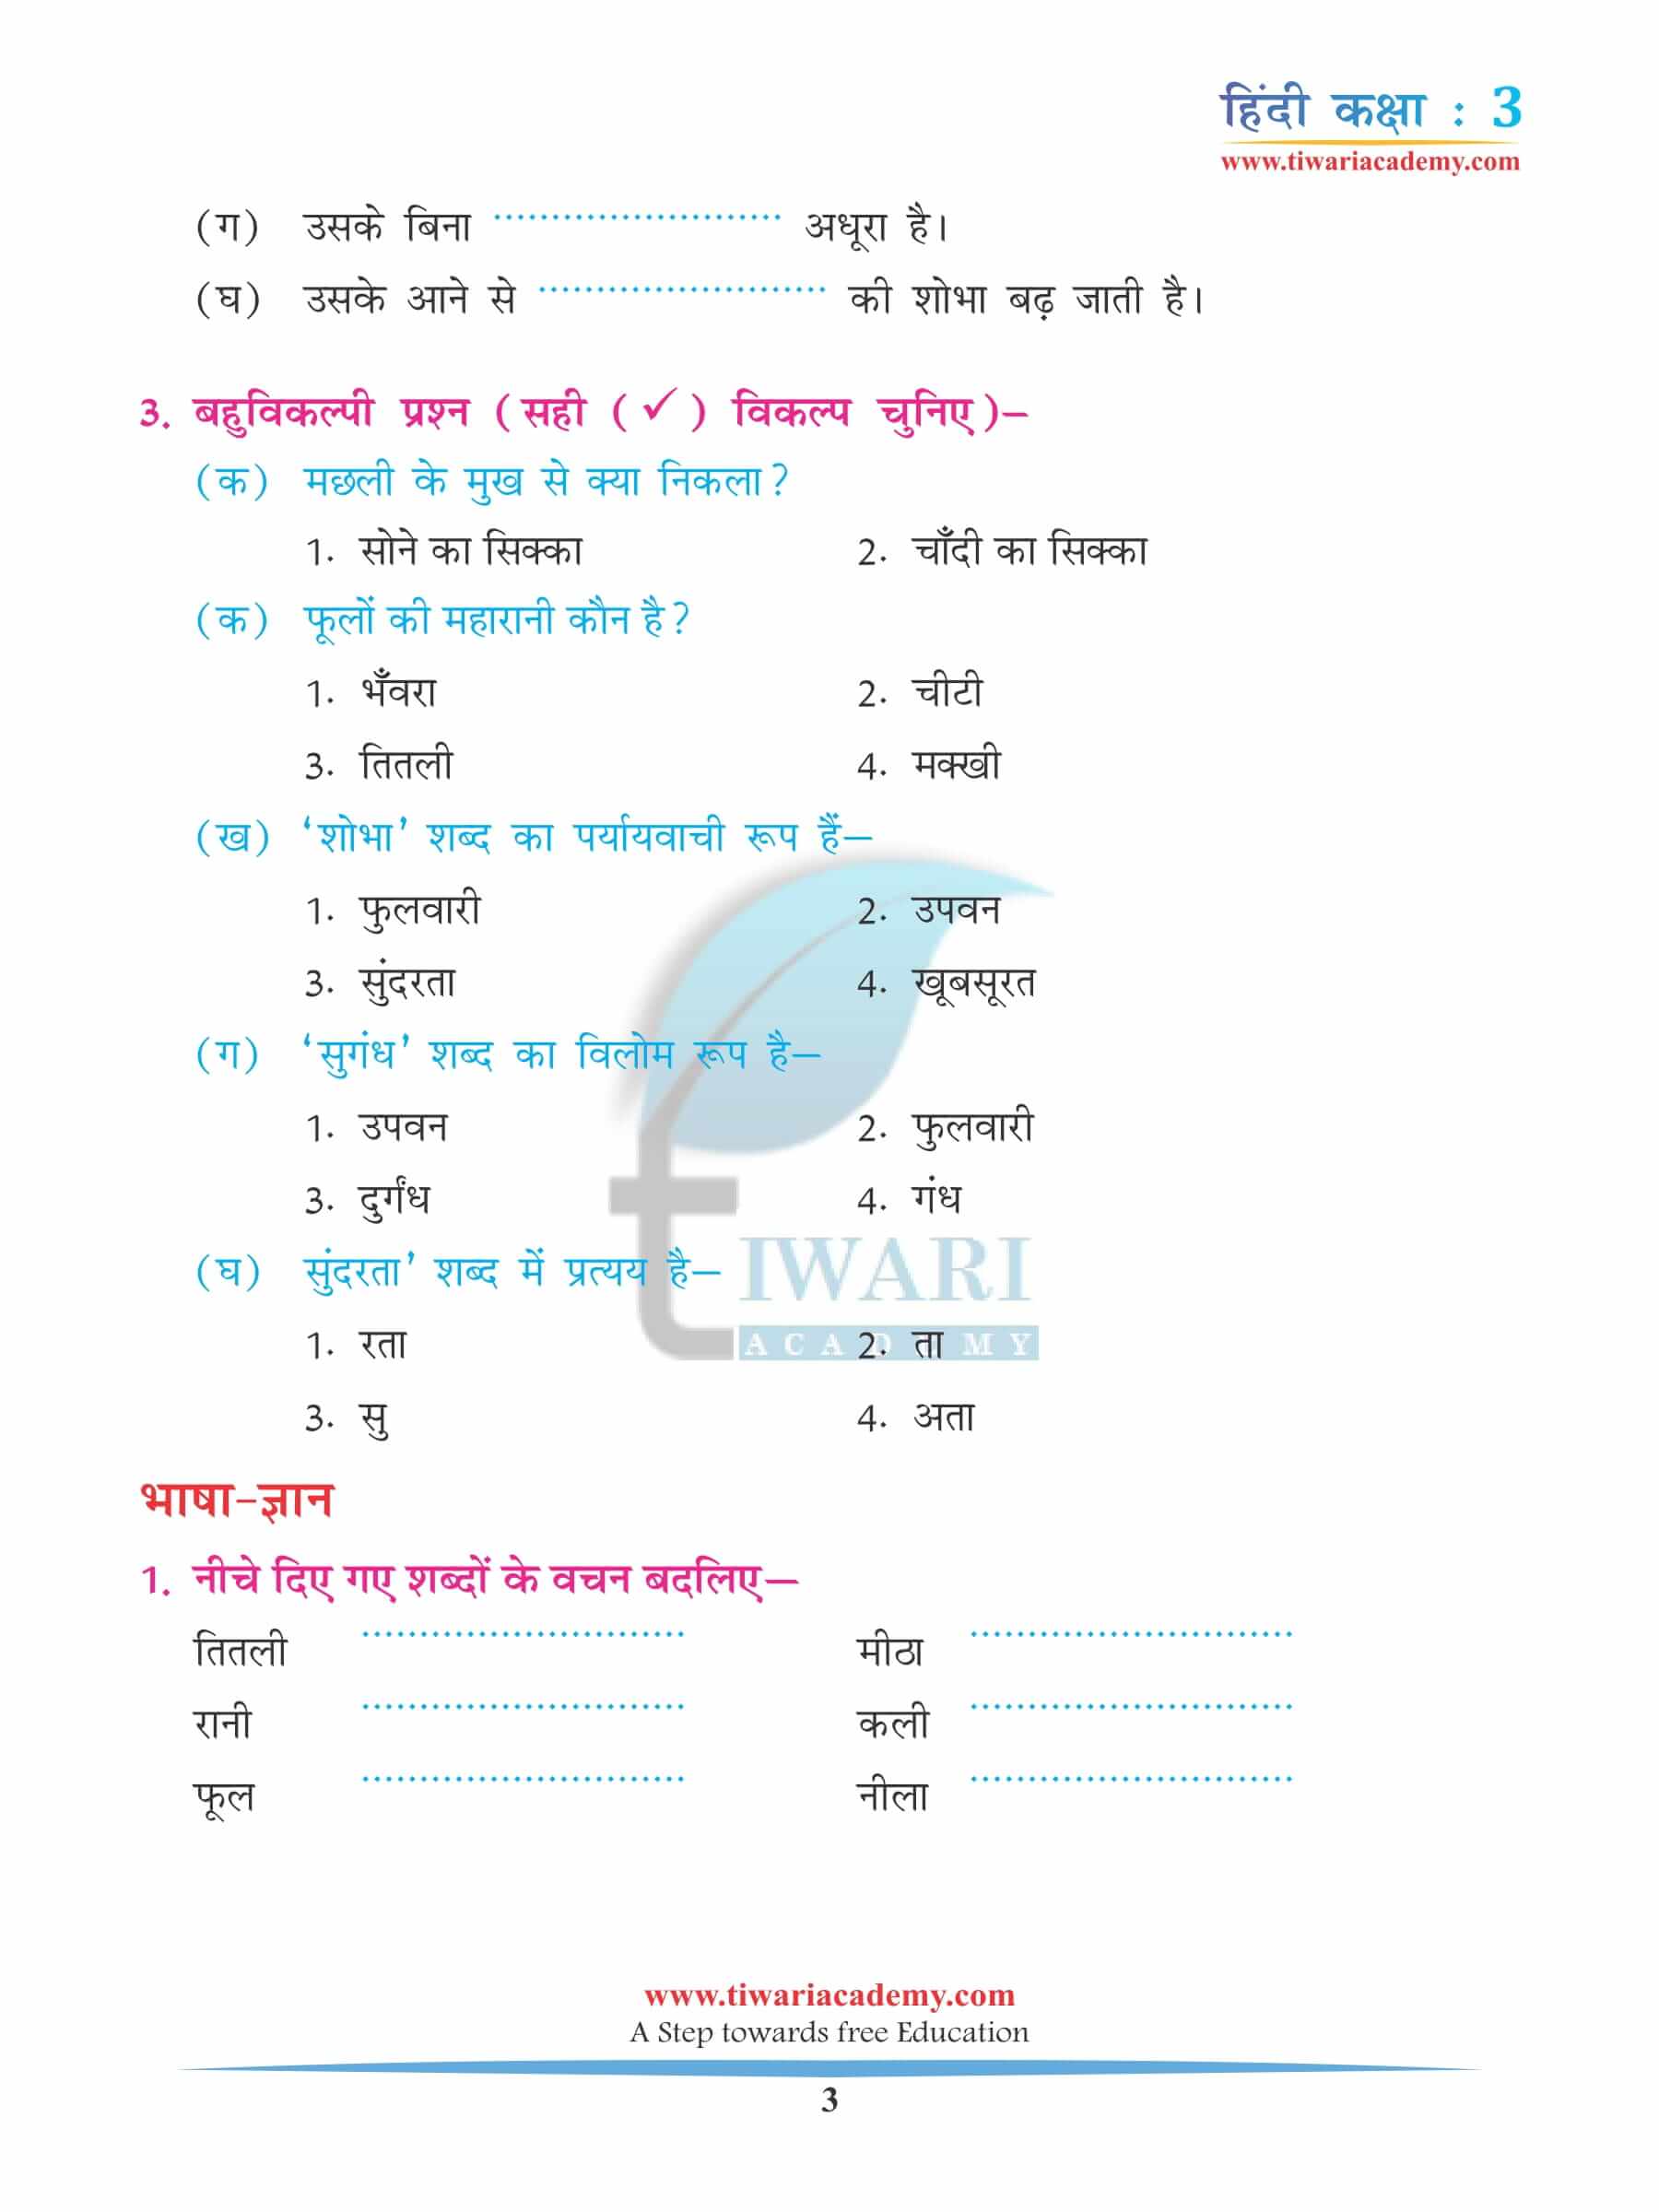 कक्षा 3 हिंदी अध्याय 1 अभ्यास के लिए किताब